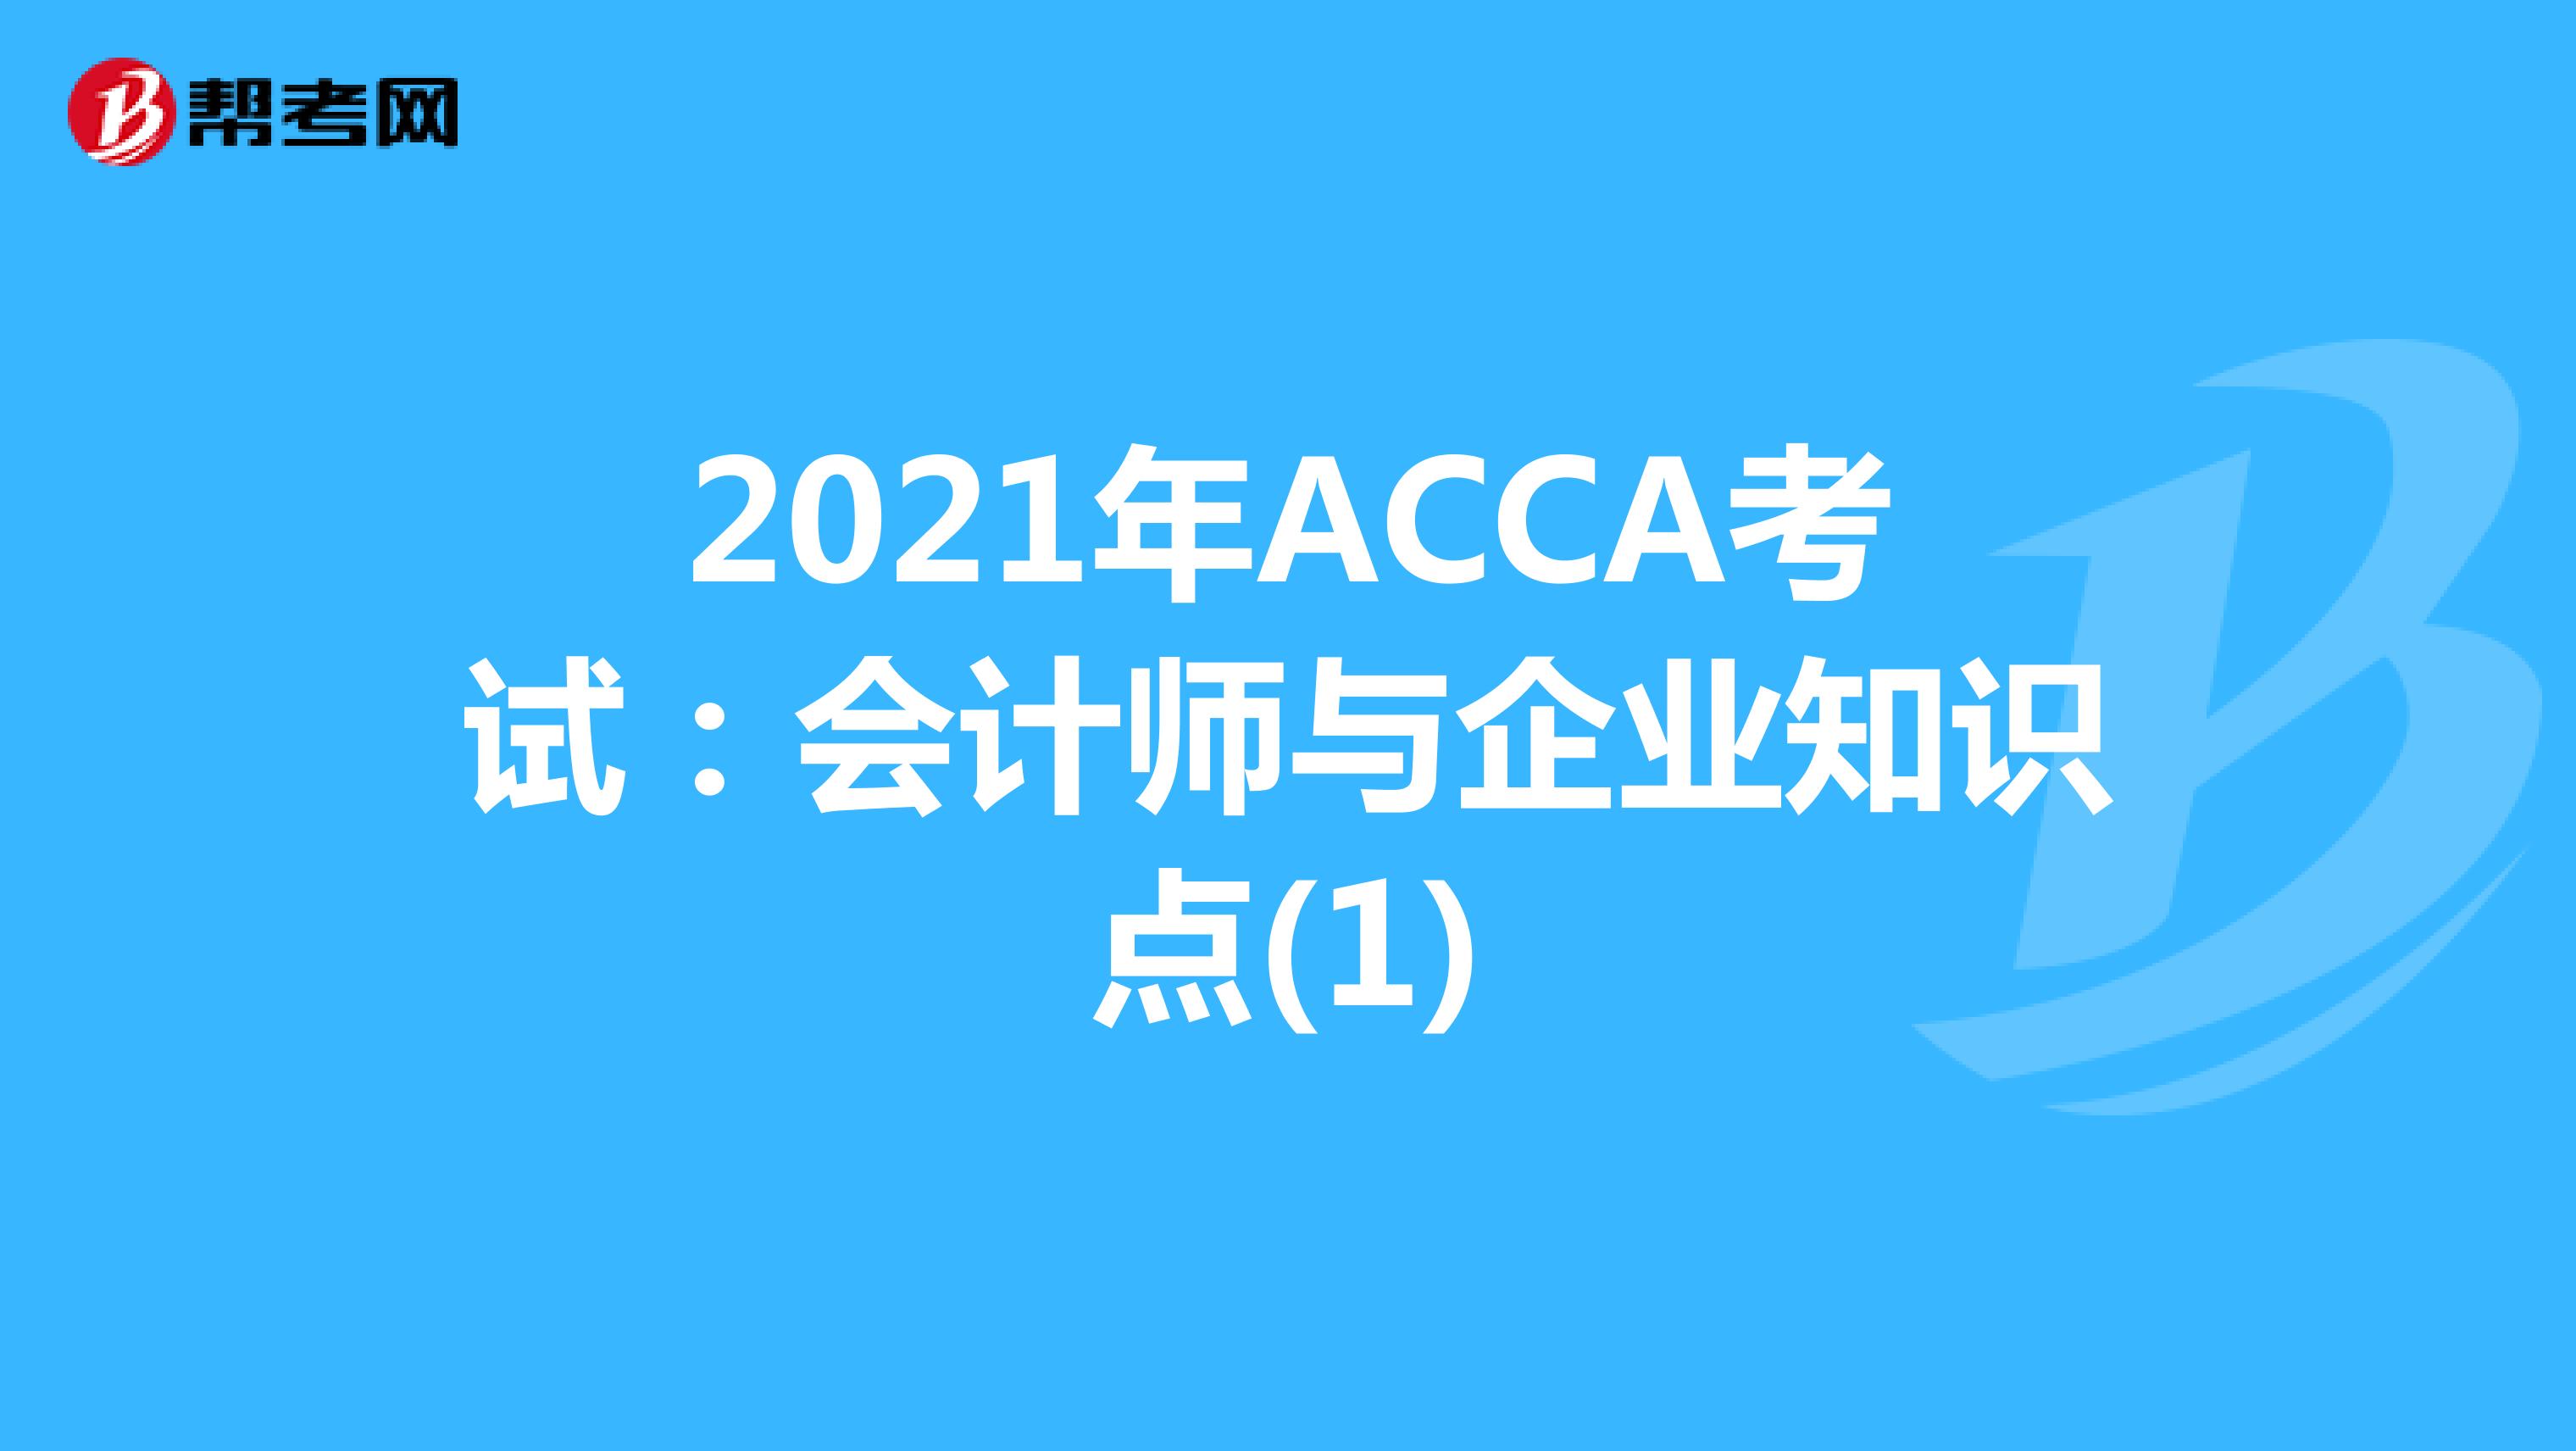 2021年ACCA考试：会计师与企业知识点(1)